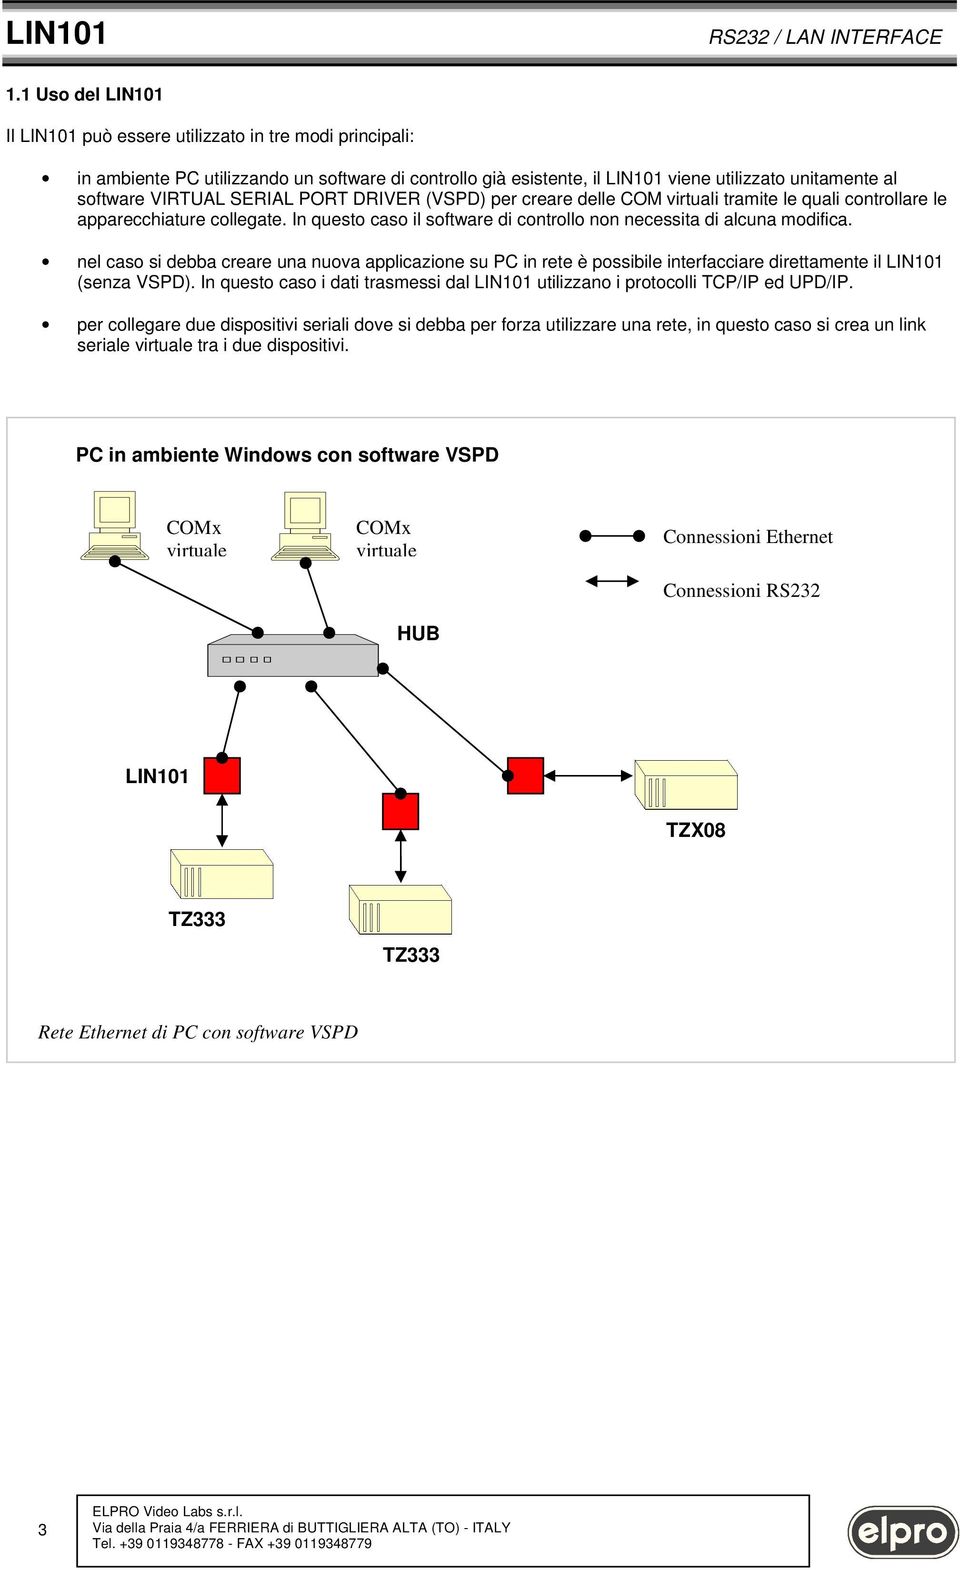 nel cas si debba creare una nuva applicazine su PC in rete è pssibile interfacciare direttamente il LIN101 (senza VSPD). In quest cas i dati trasmessi dal LIN101 utilizzan i prtclli TCP/IP ed UPD/IP.